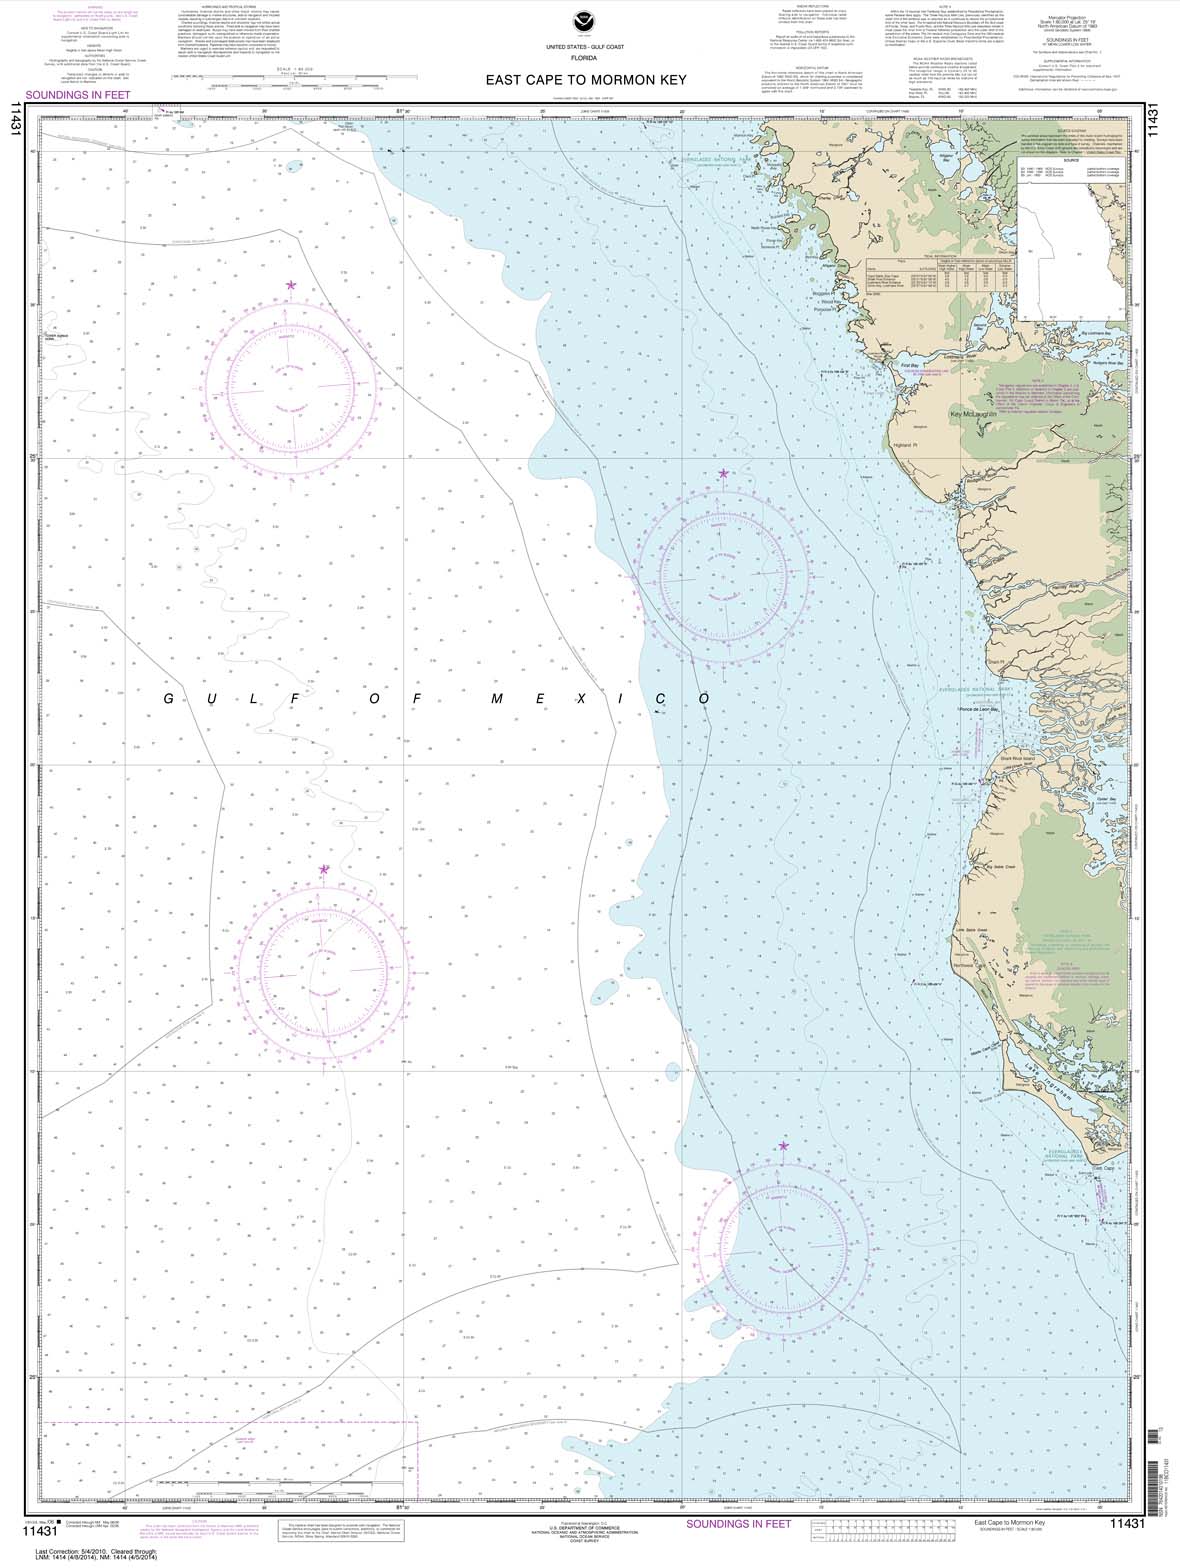 HISTORICAL NOAA Chart 11431: East Cape to Mormon Key